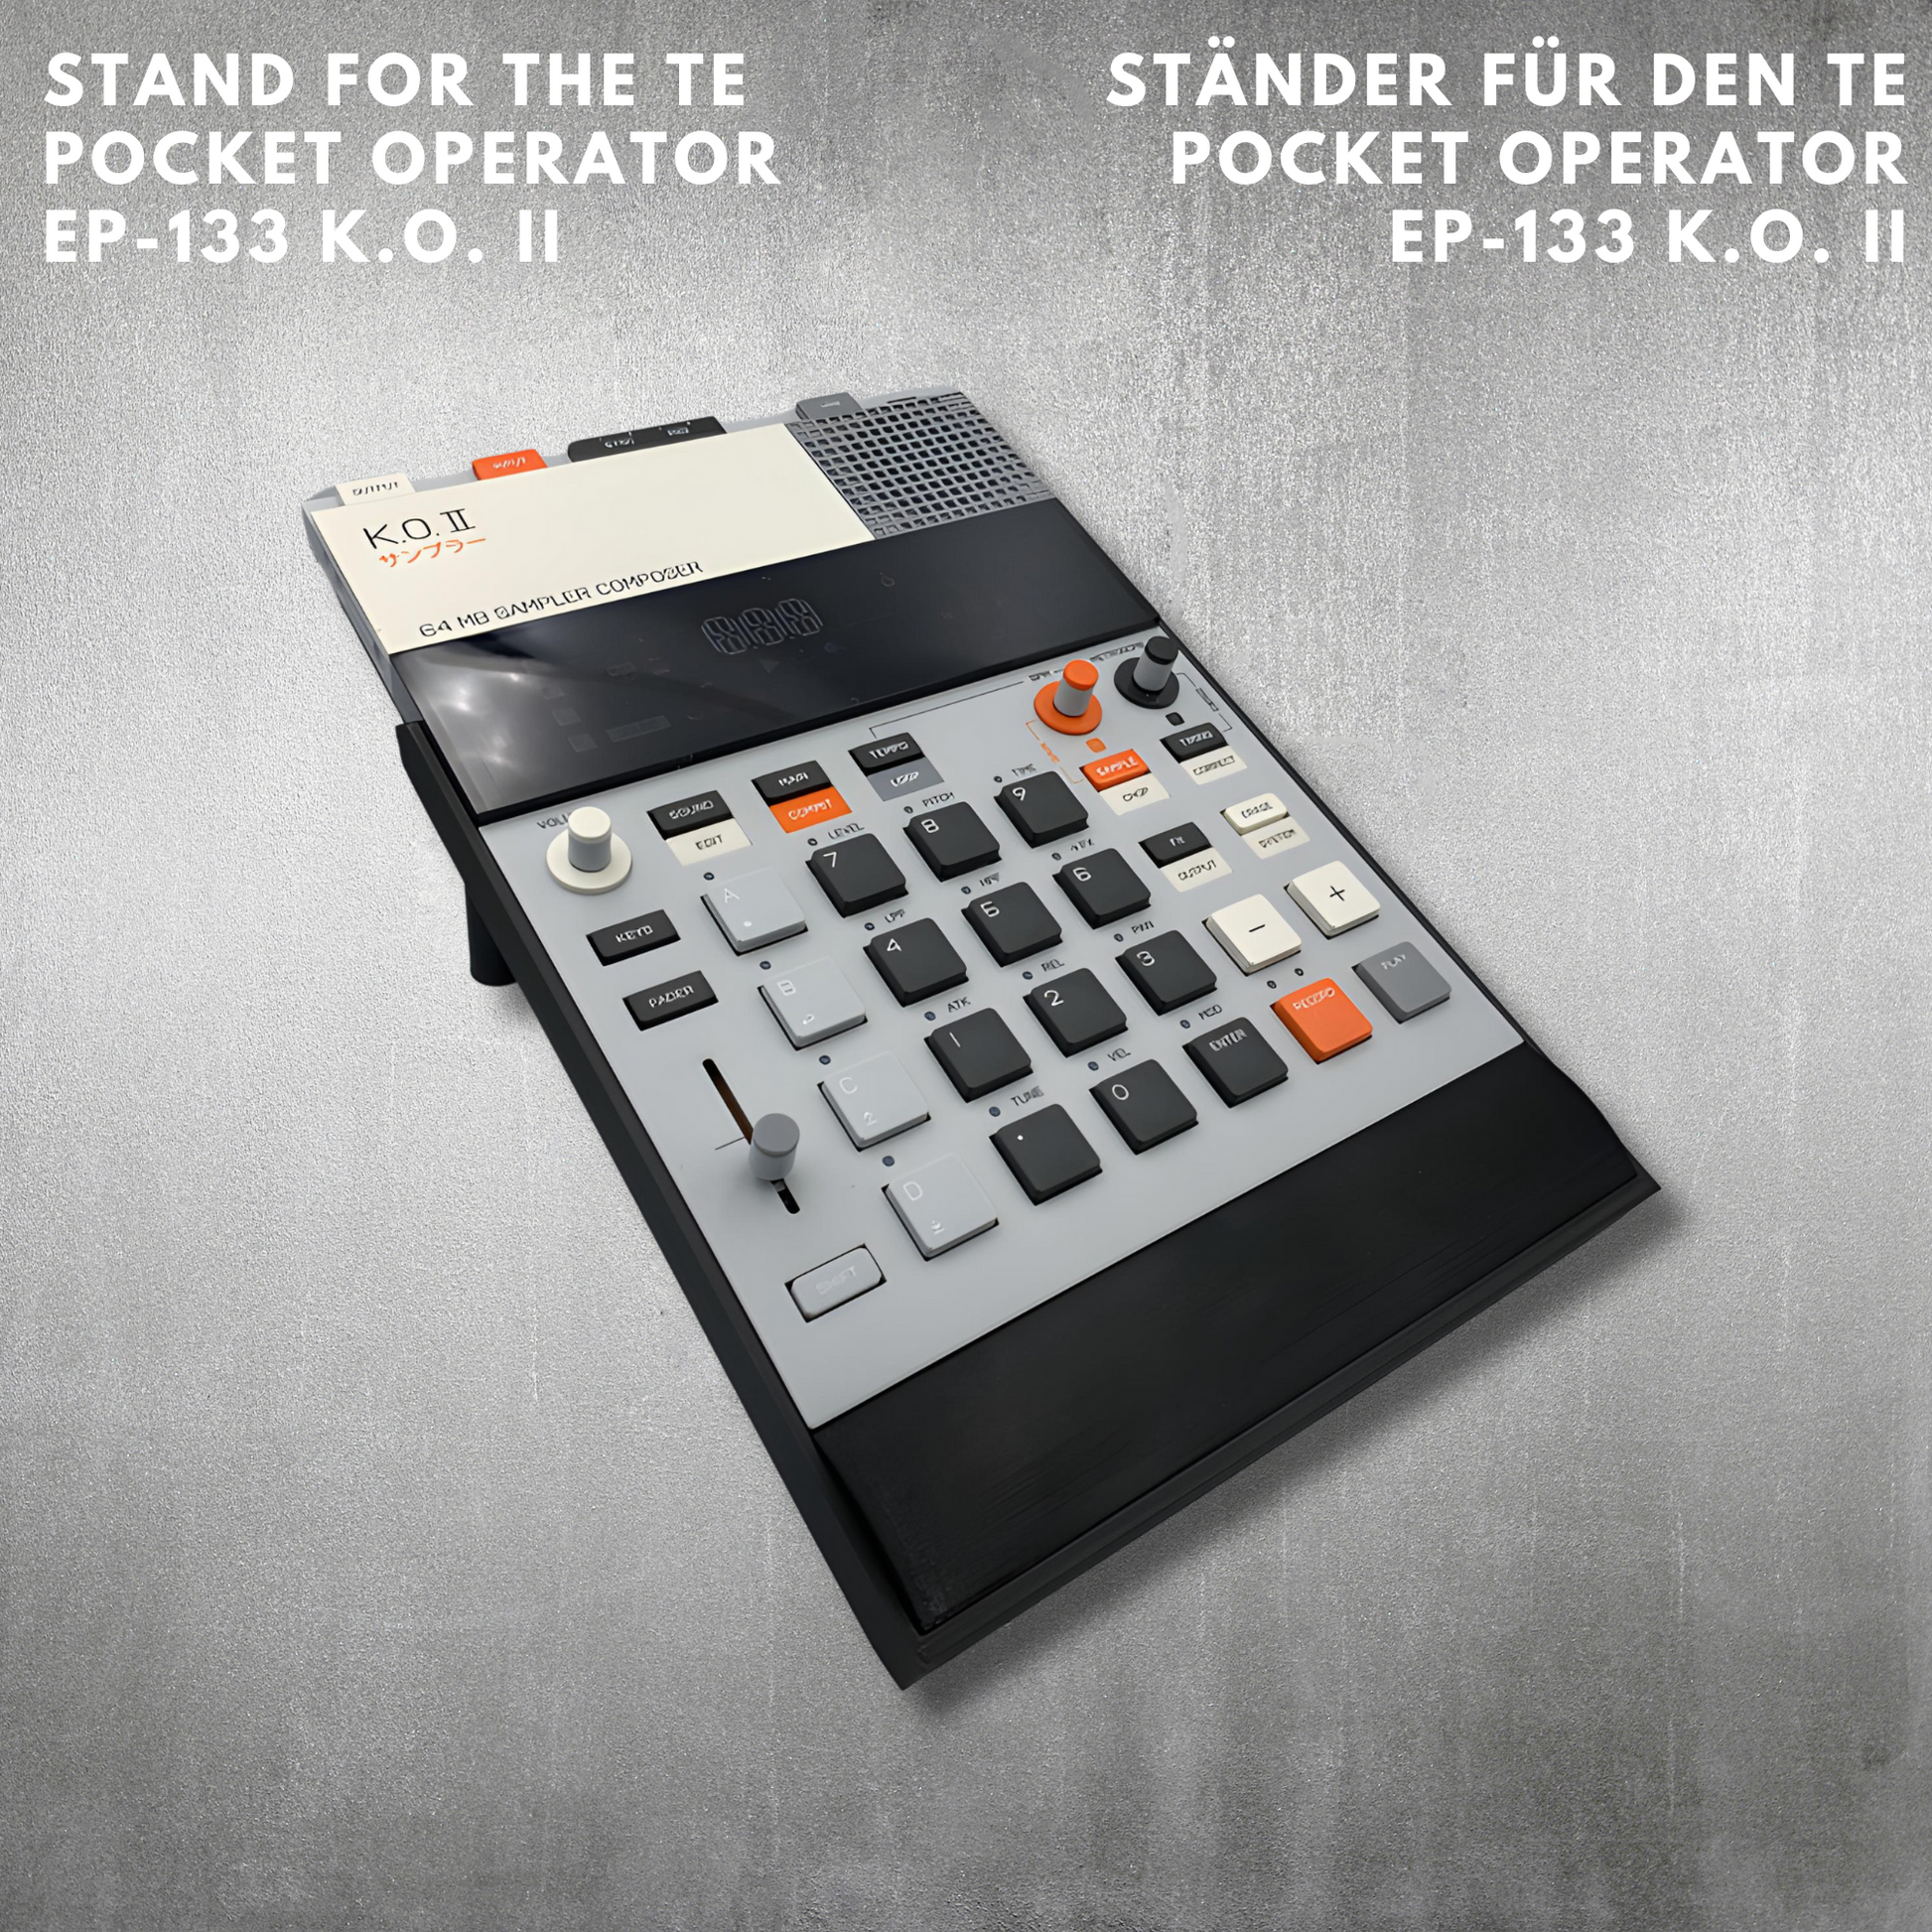 justAstand für EP-133 K.O. II Pocket Operator - 3D gedruckter Tischständer - SPM - Spillerphoto & Music